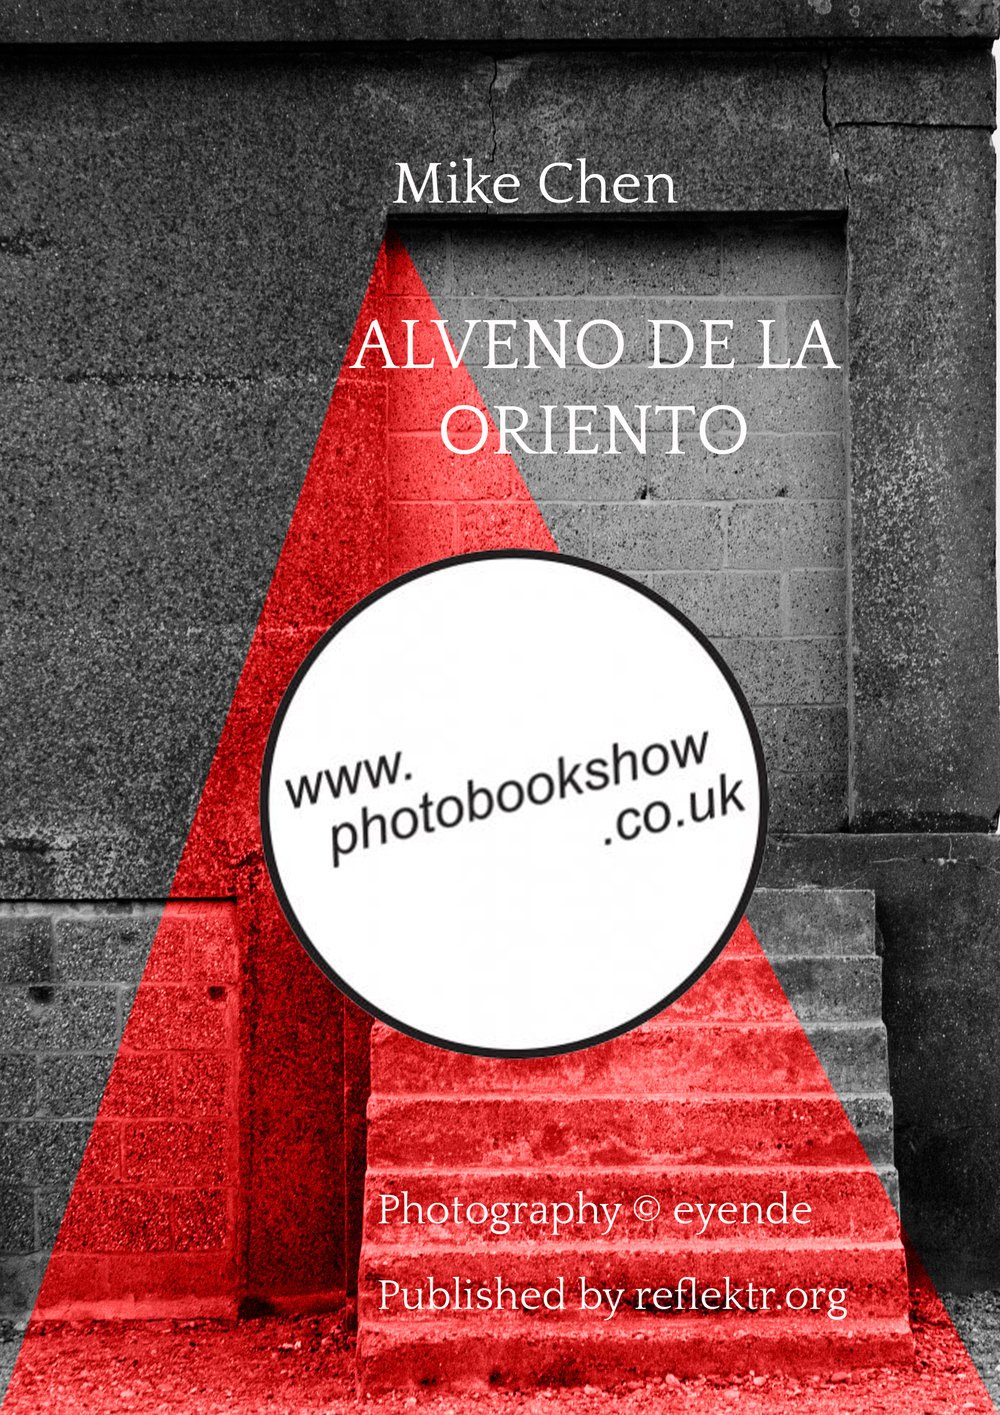 Image of Alveno da la Oriento